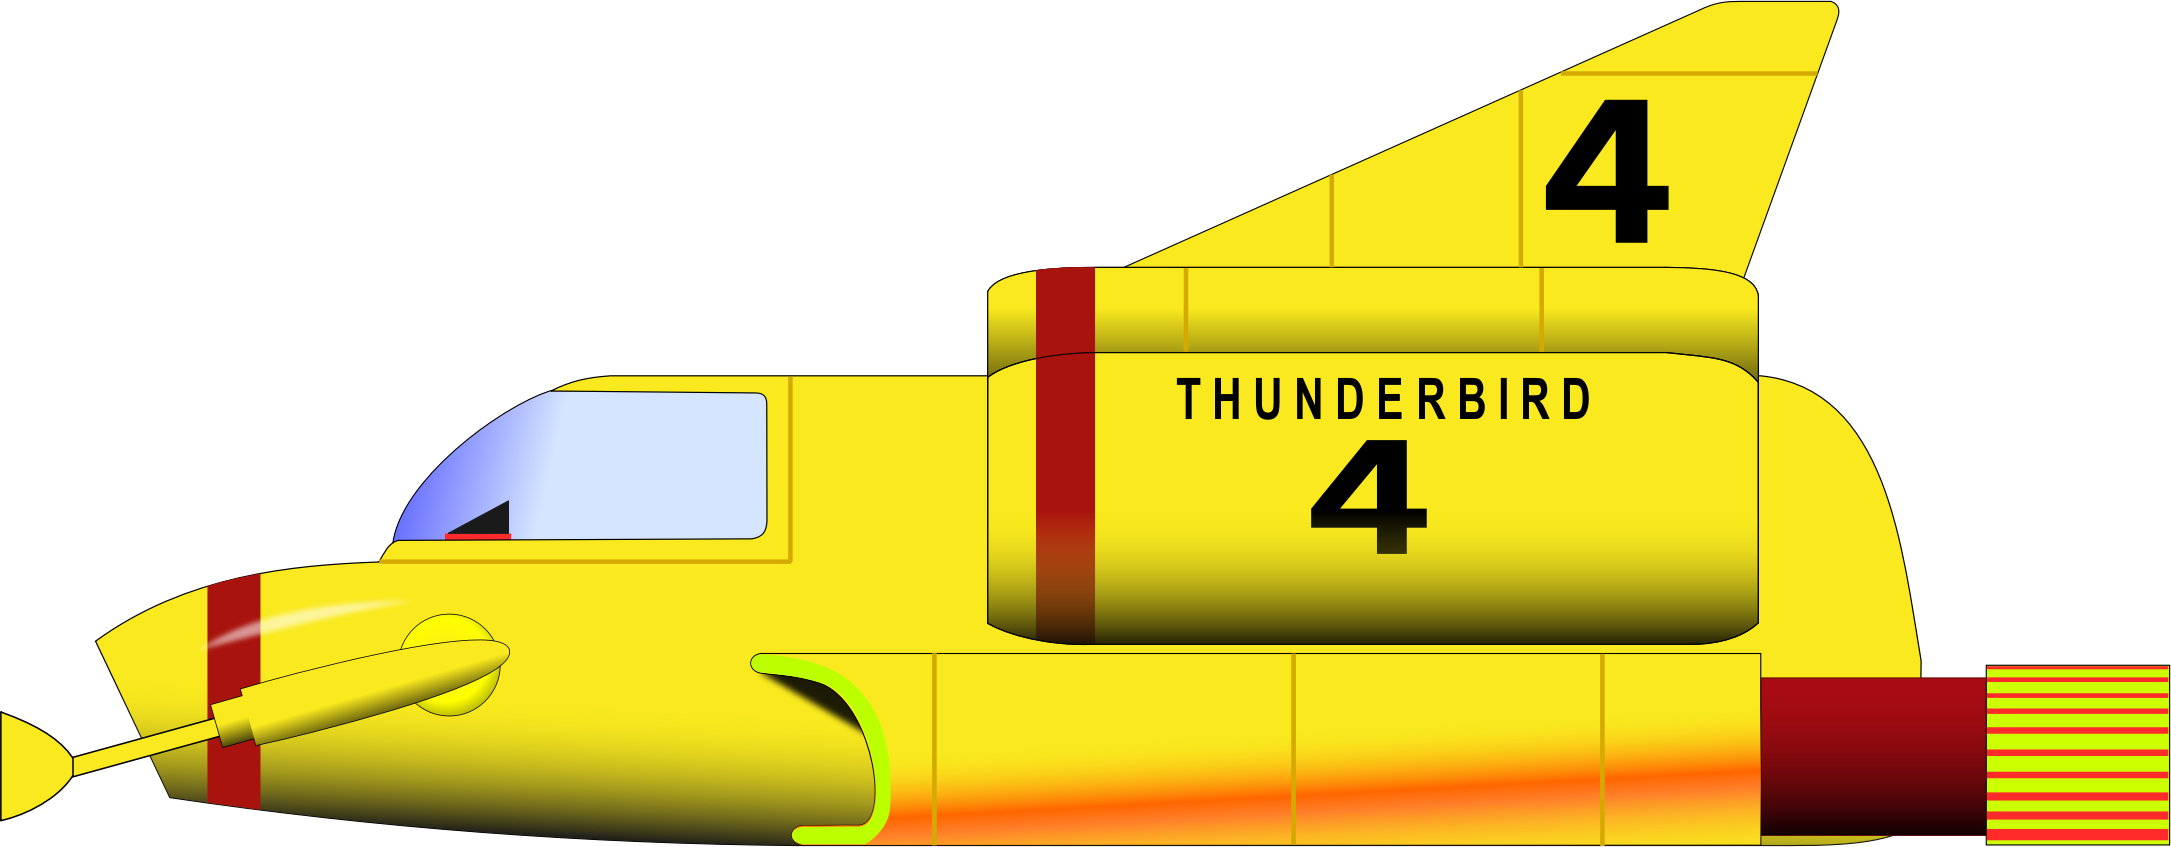 Big Image - Thunderbird 4 Png (2171x847)